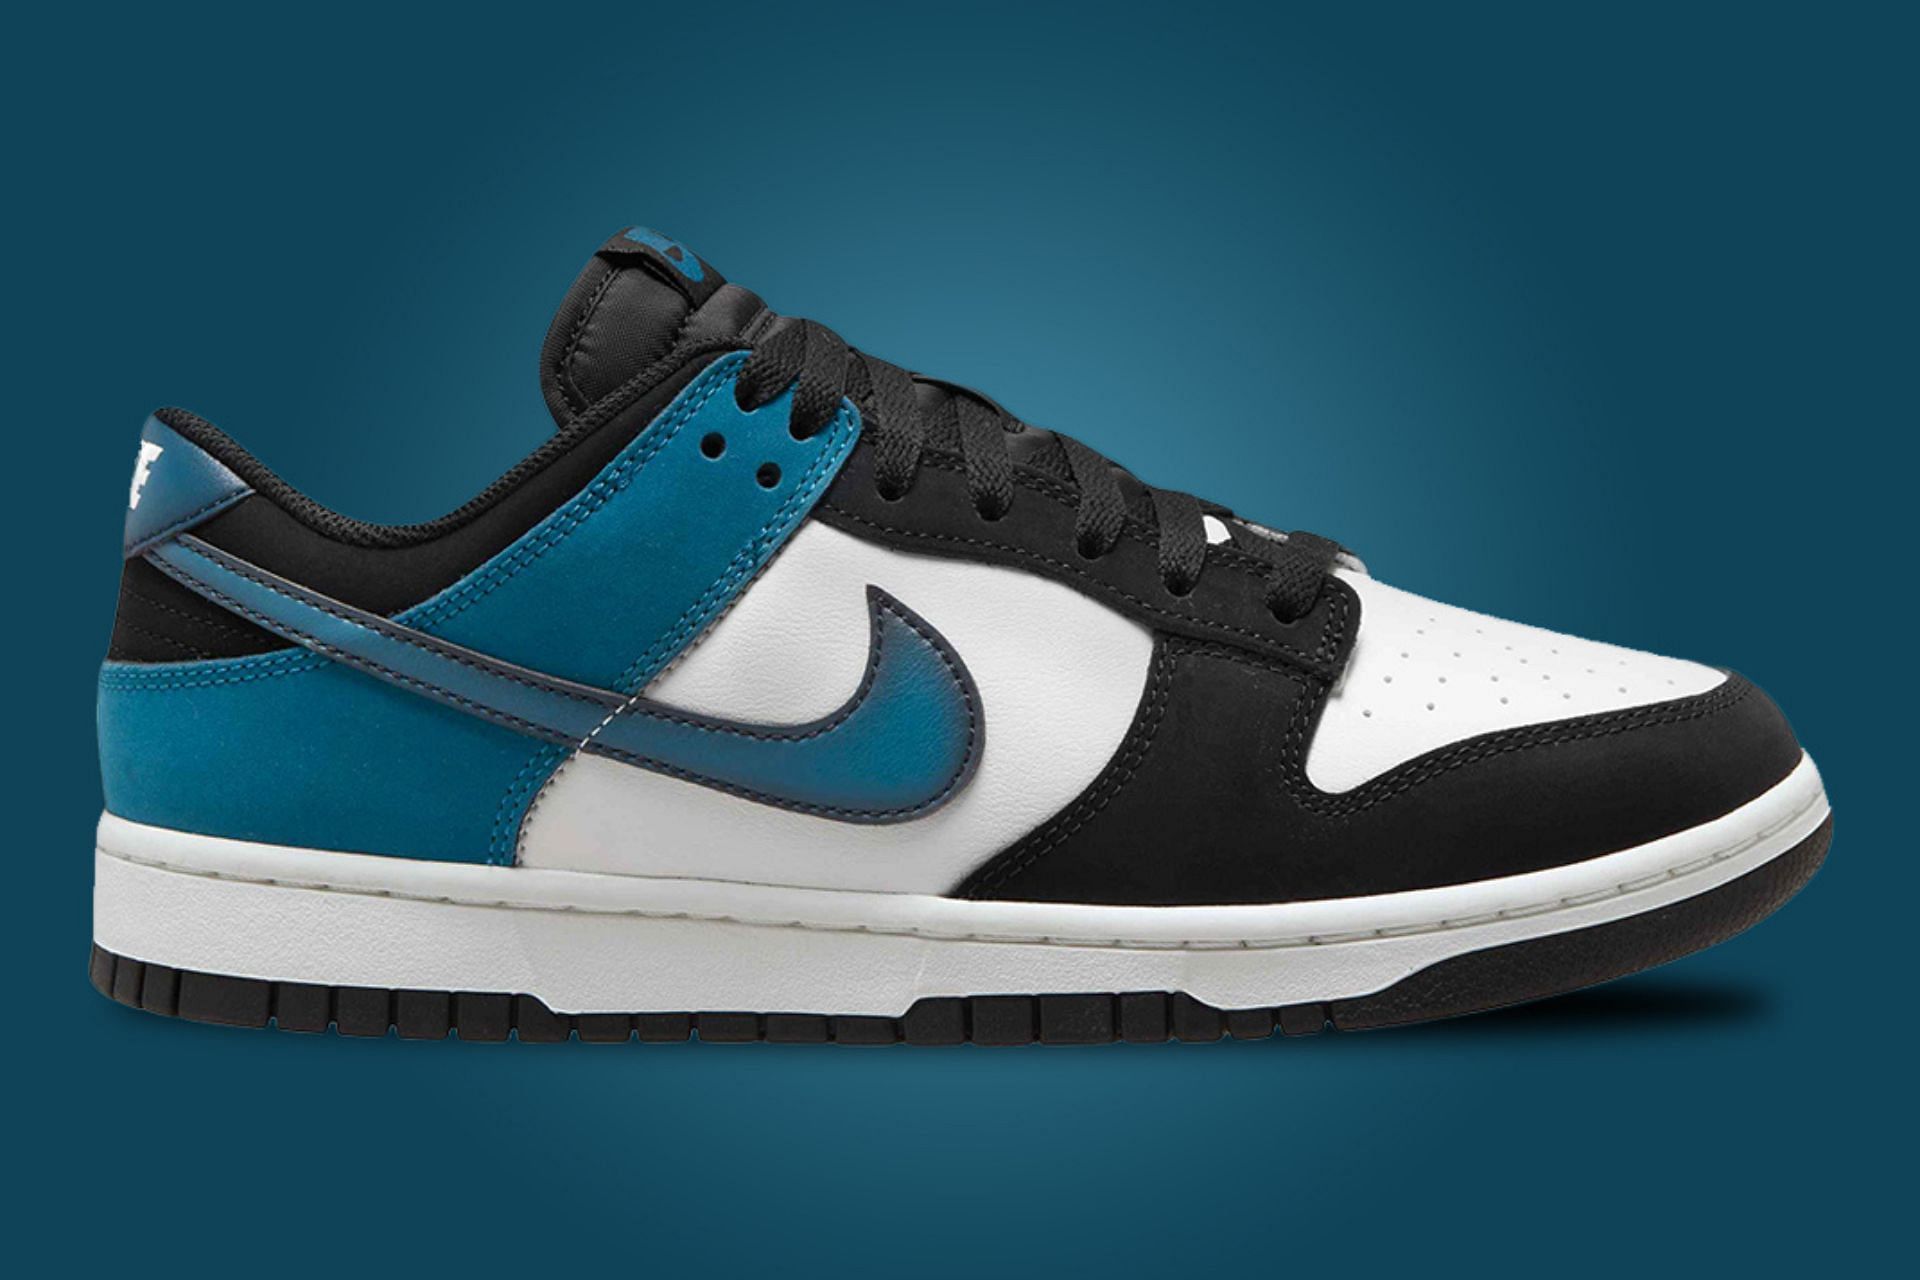 Nike Dunk Low Industrial Blue colorway (Image via Nike)